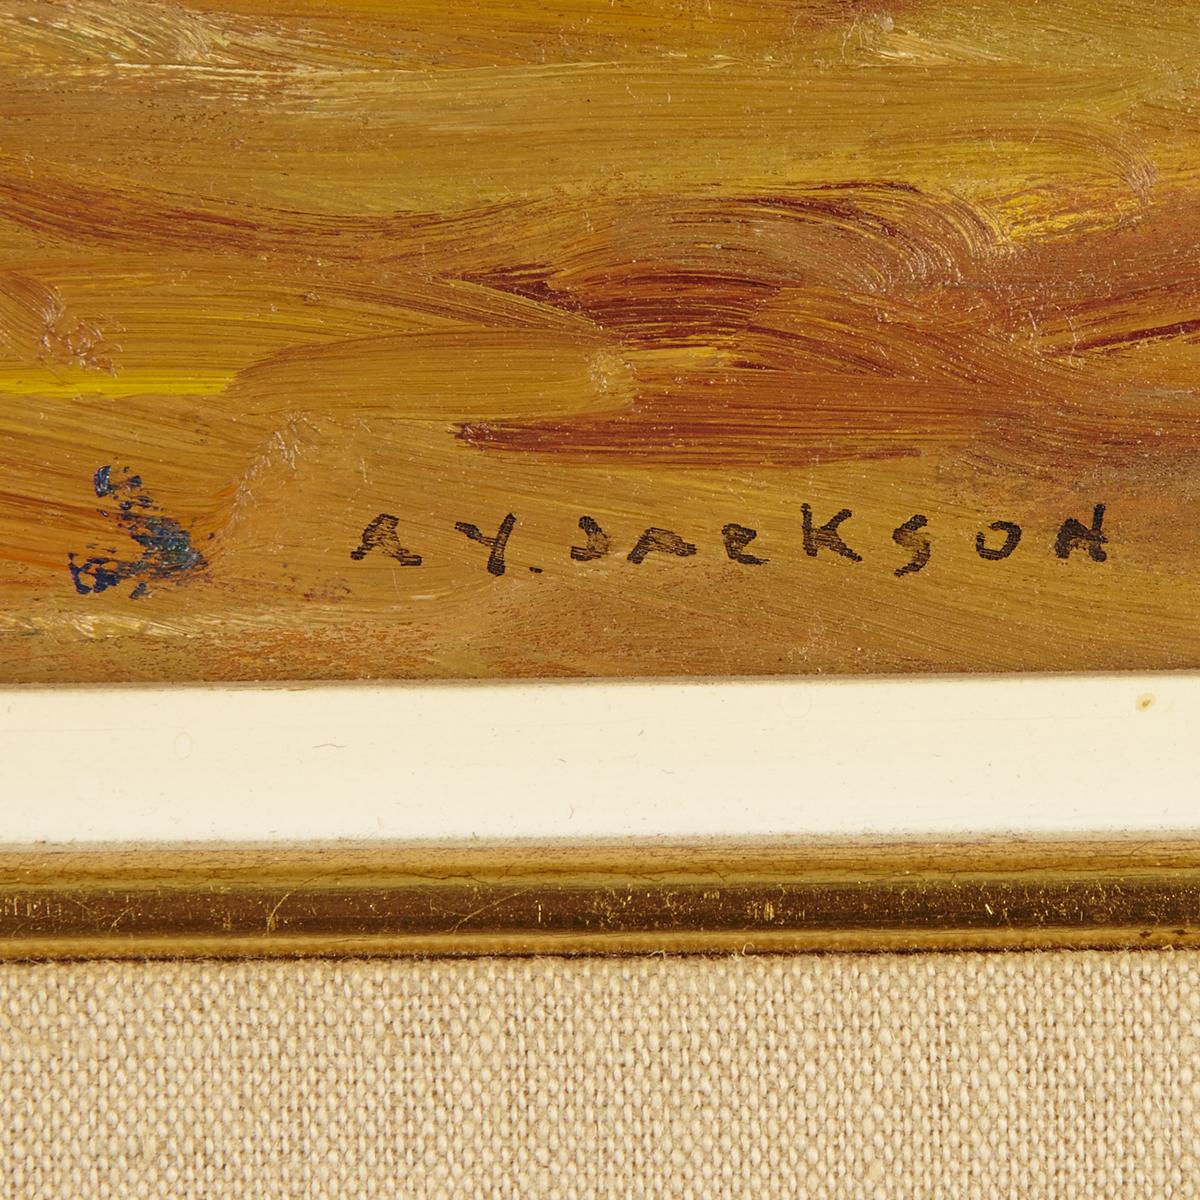 ALEXANDER YOUNG JACKSON, O.S.A., R.C.A.